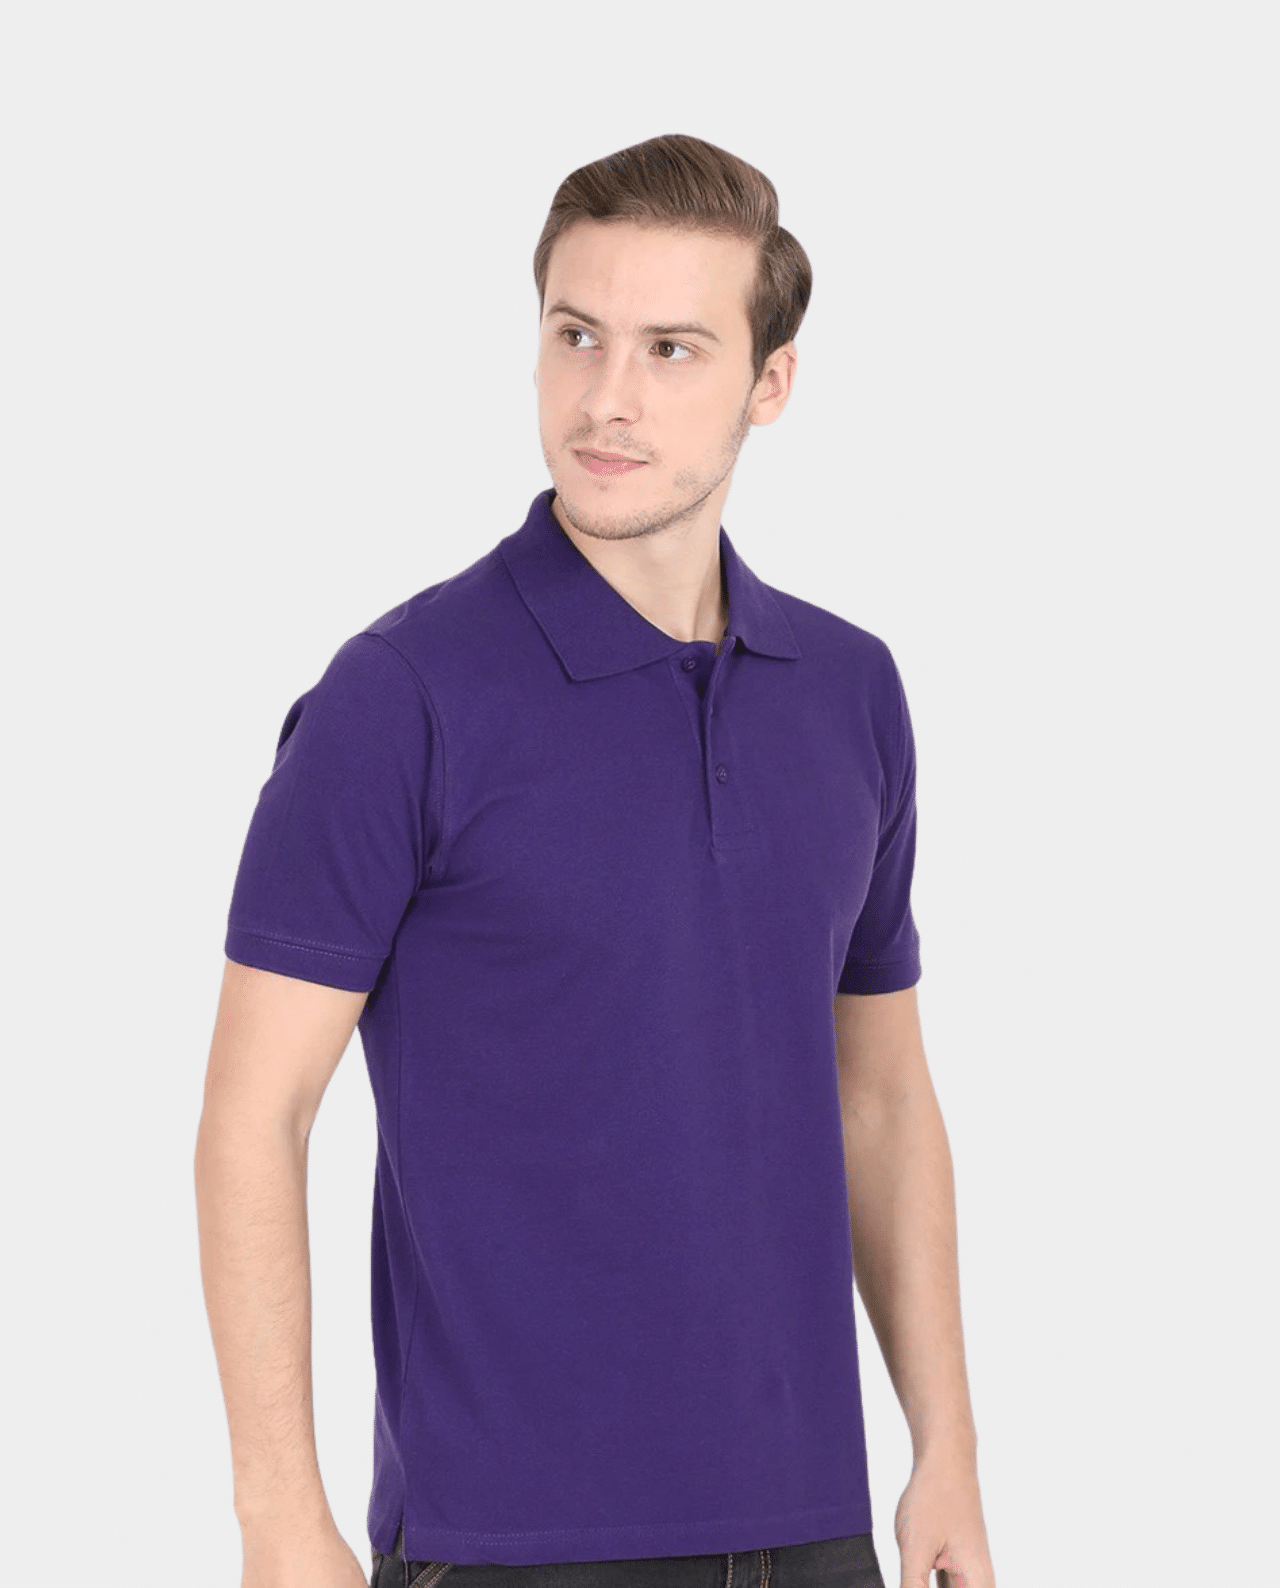 Merchandastic Basics Purple – Men’s Polo Tshirt - Merchandastic!